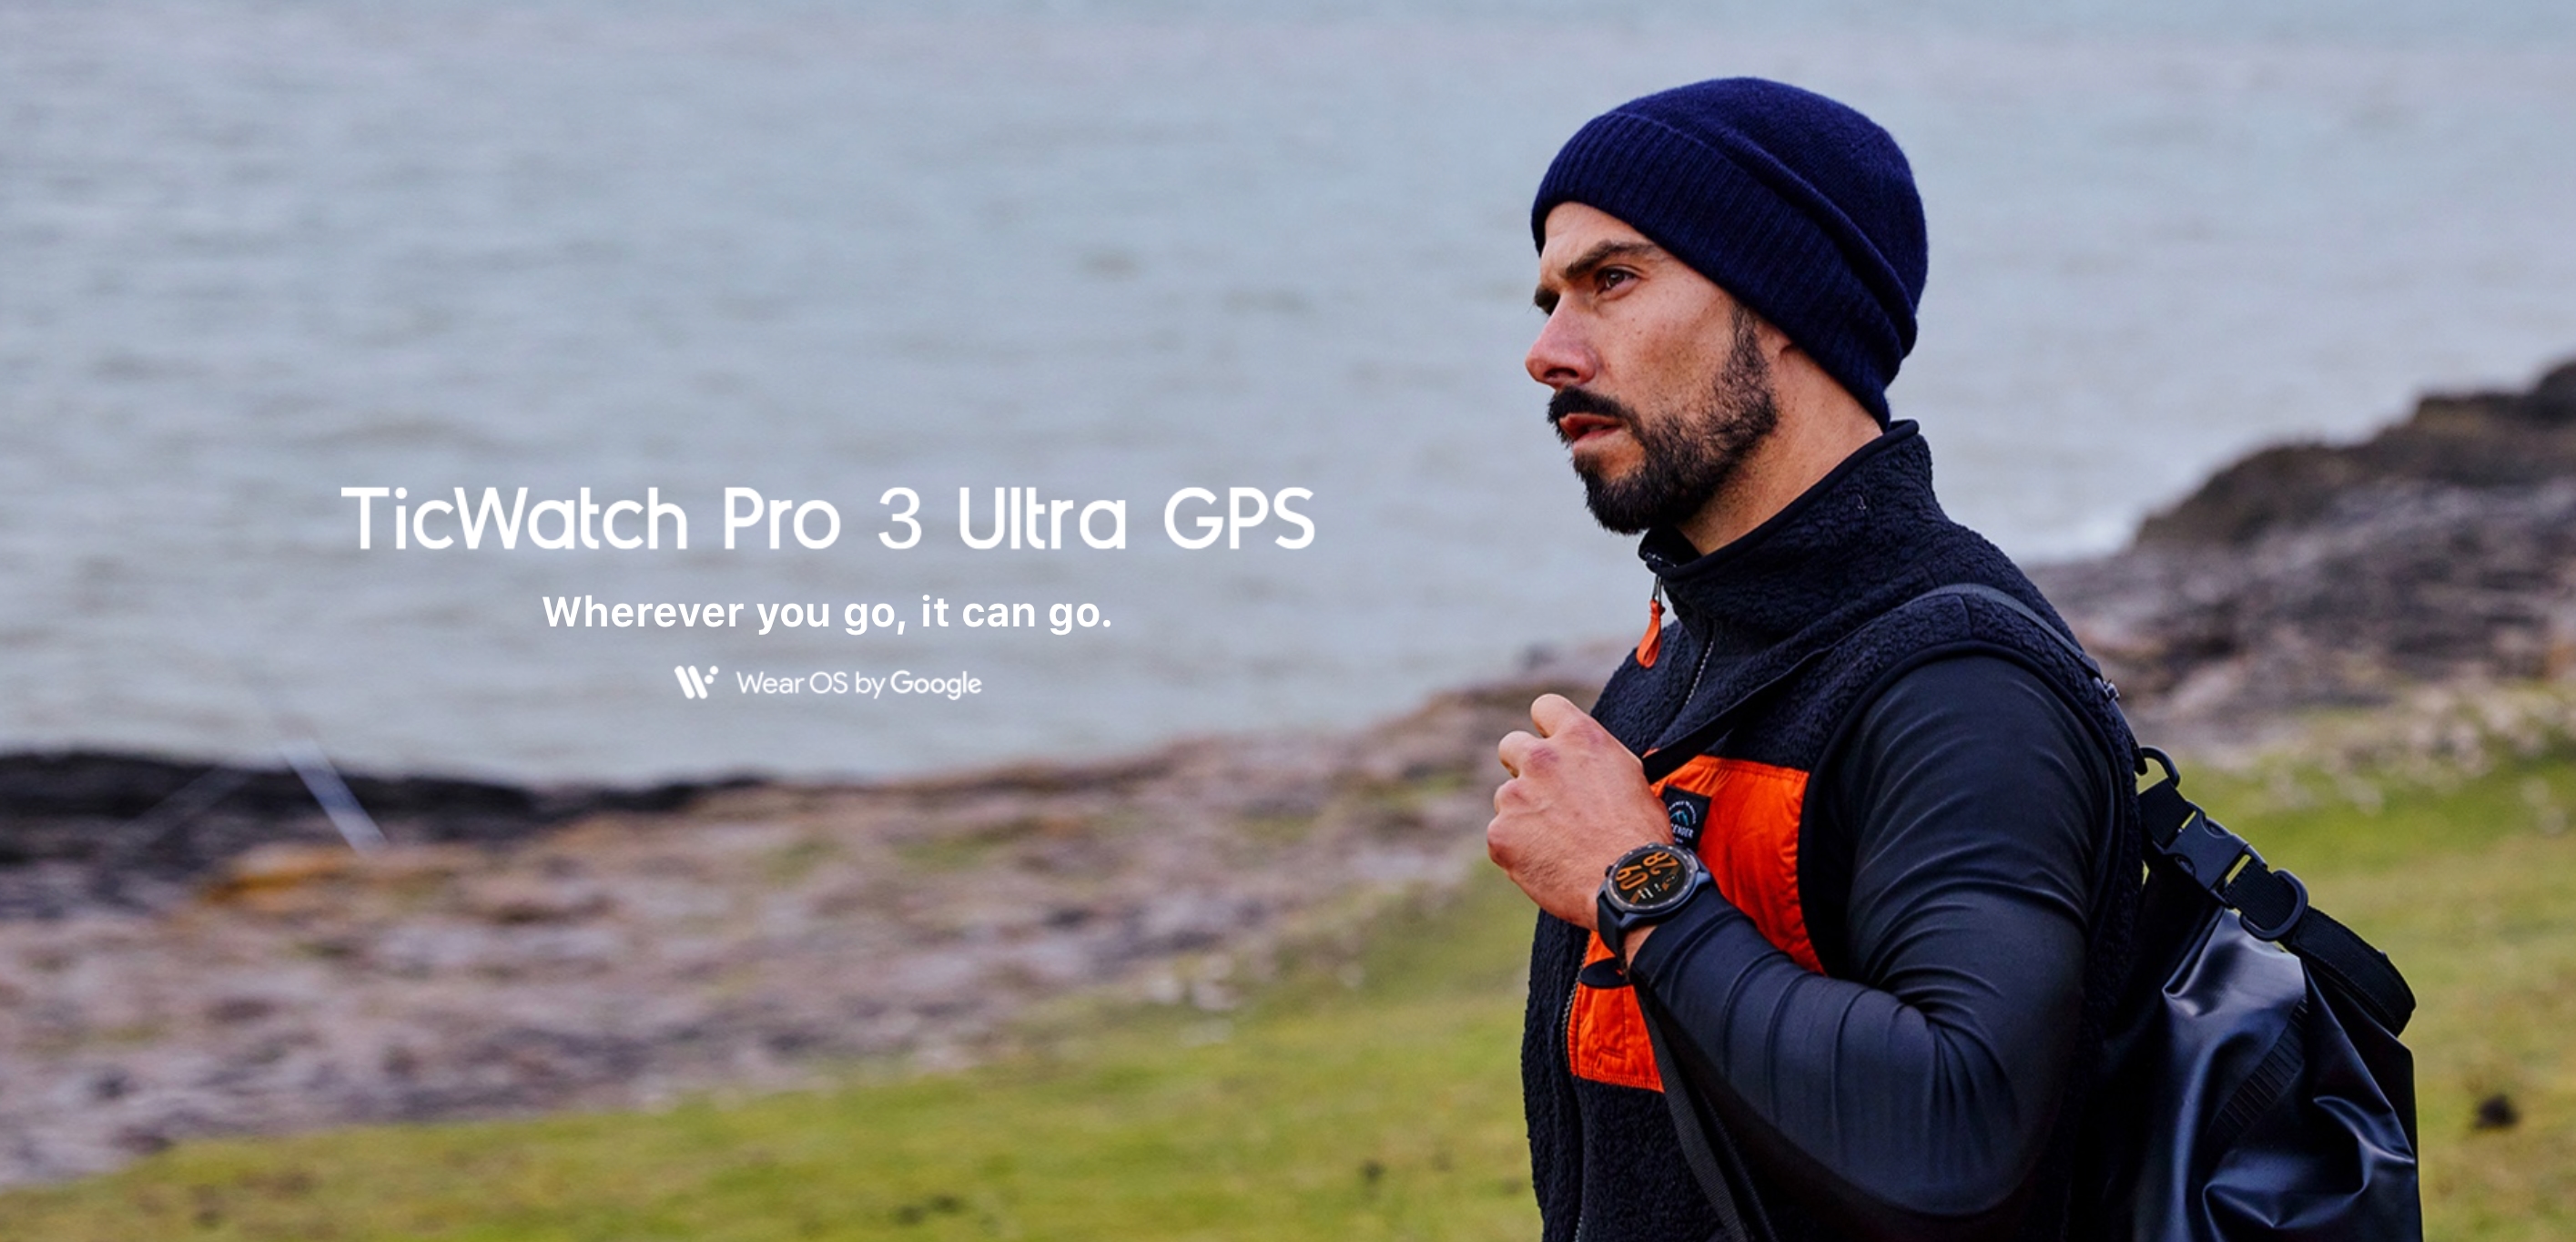 Mobvoi TicWatch Pro 3 Ultra GPS: Wear OS-Smartwatch mit doppeltem Bildschirm, Snapdragon Wear 4100-Chip und bis zu 45 Tagen Akkulaufzeit für 299 US-Dollar